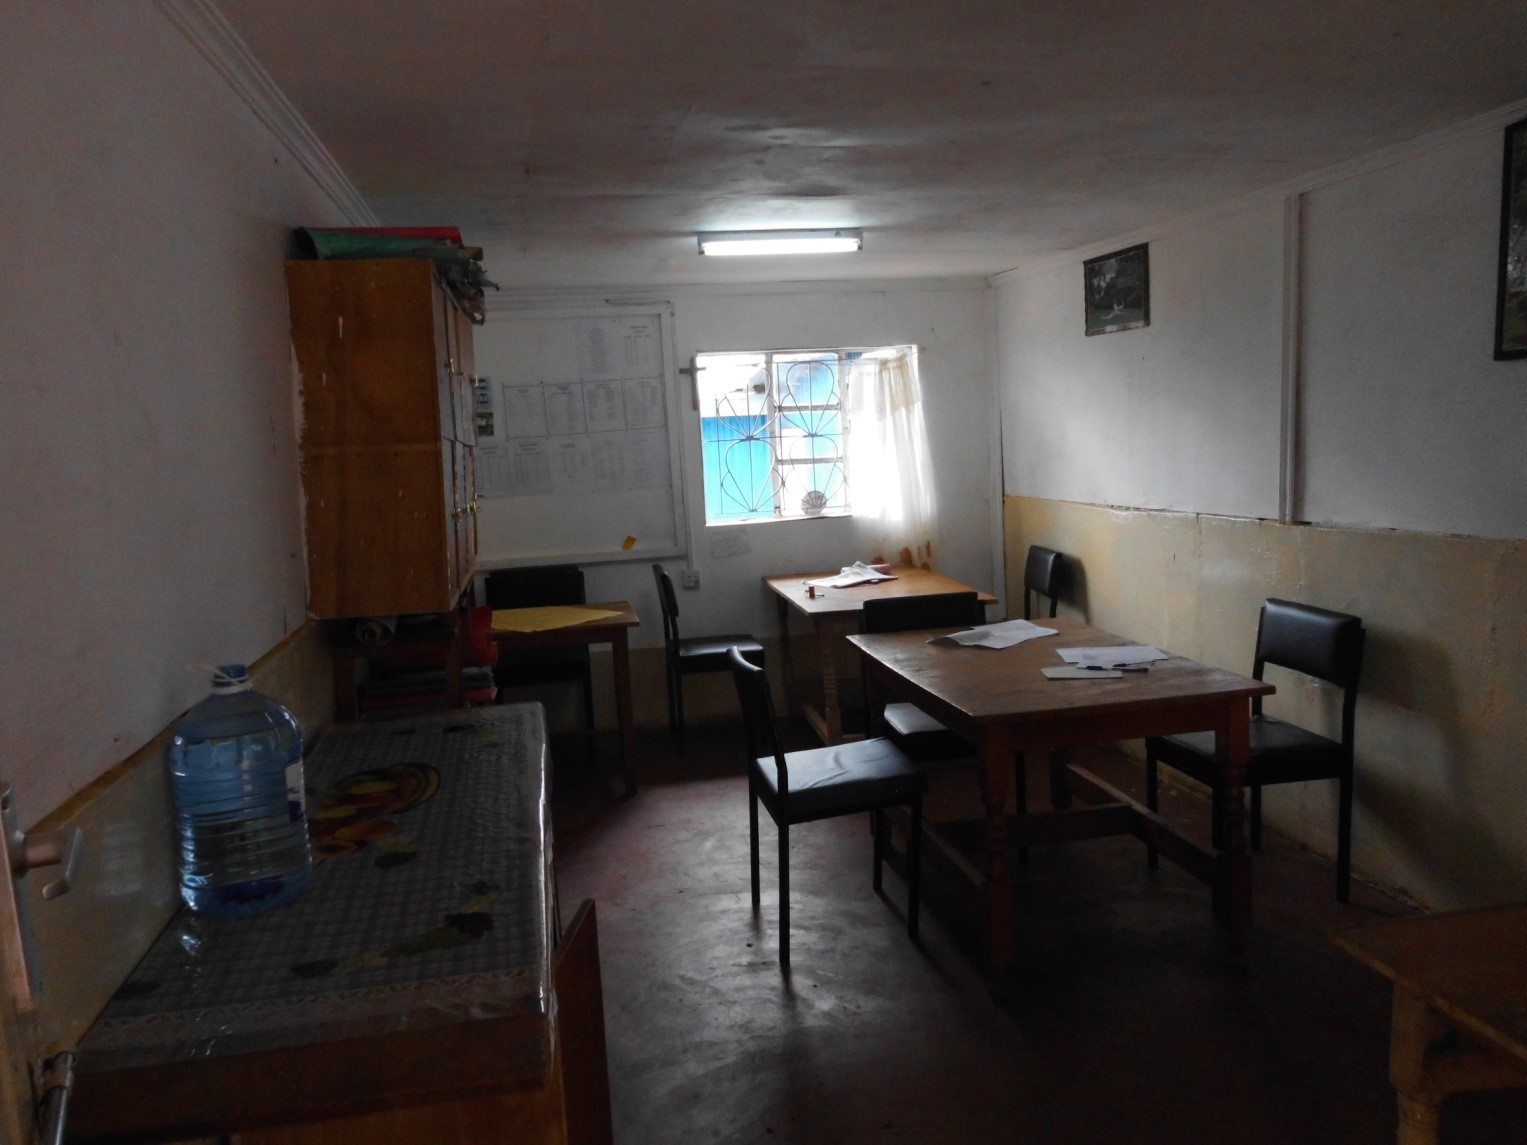 Das renovierte Lehrerzimmer / renovated staff room